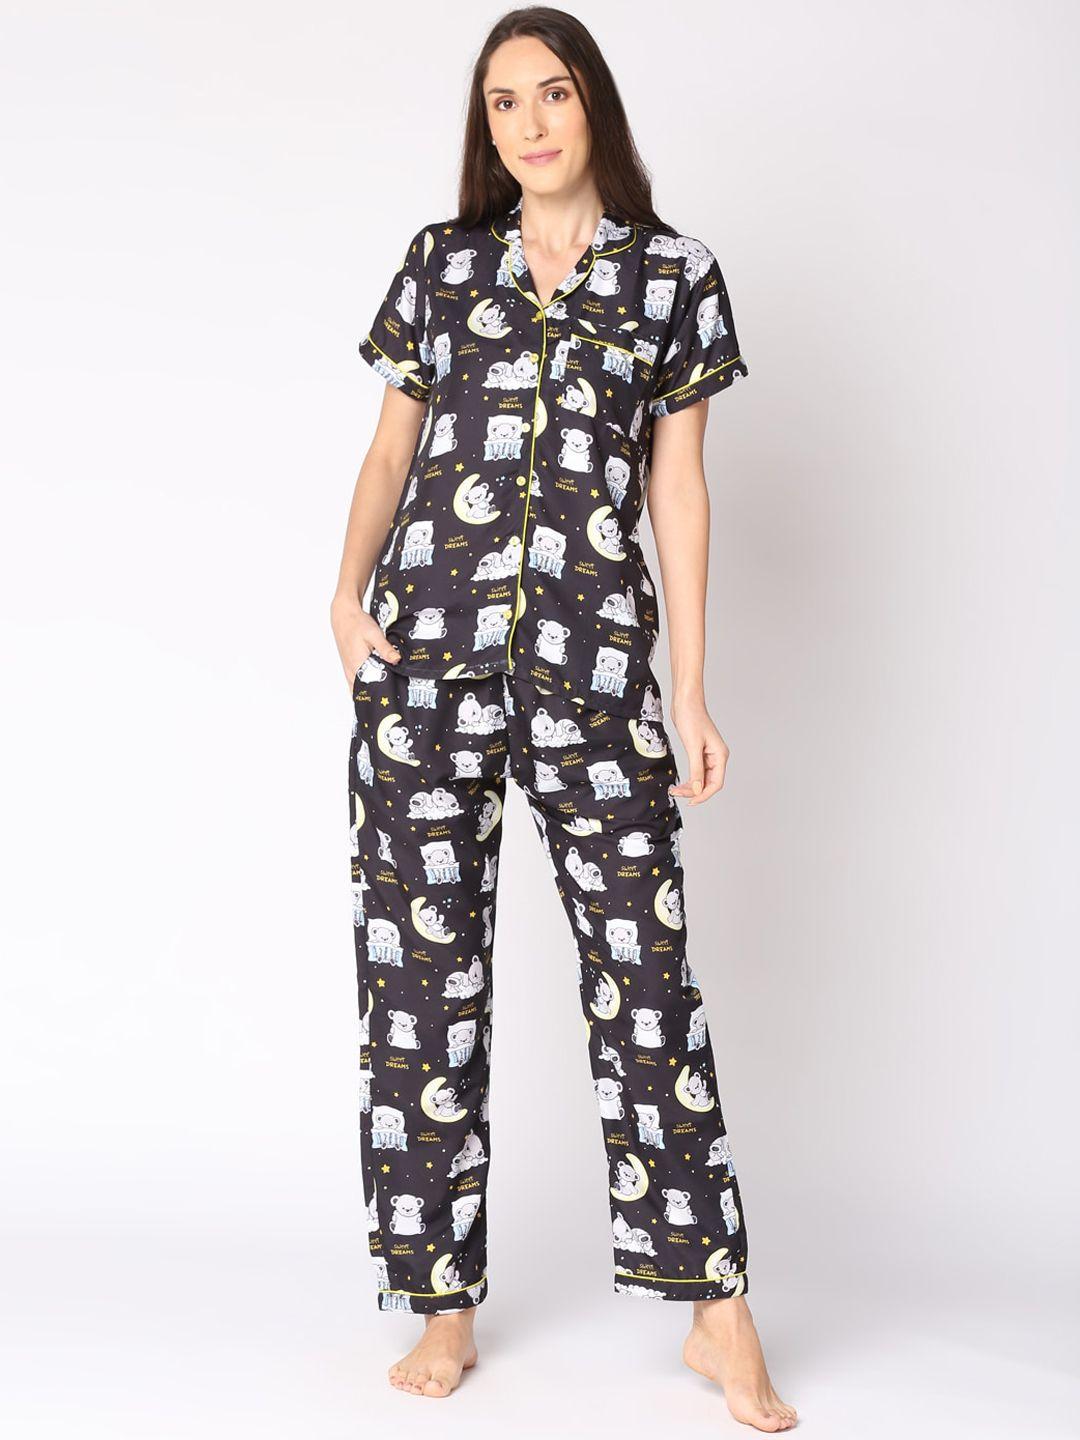 pyjama party women black & white printed night suit